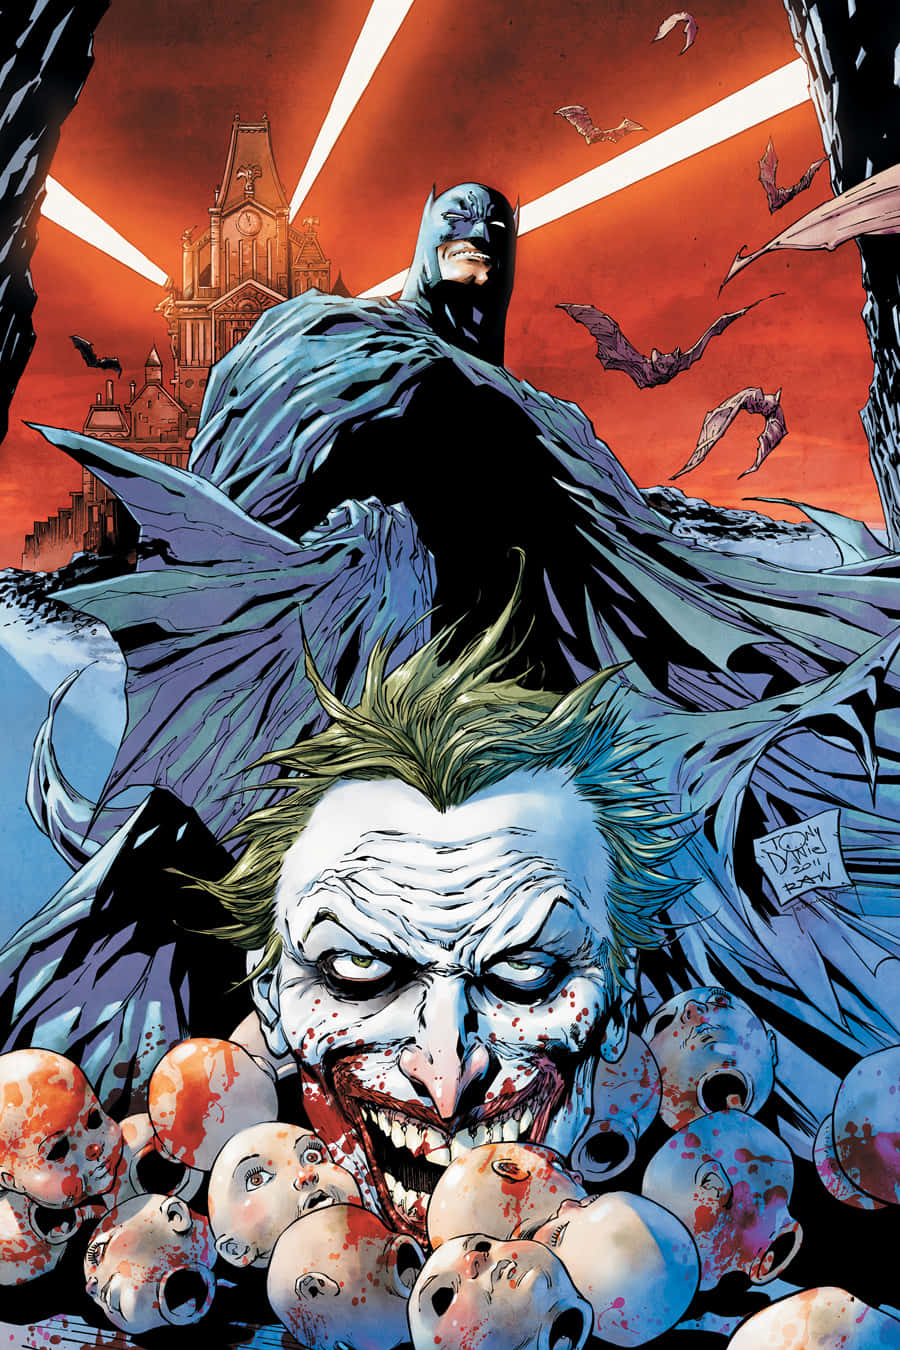 Den Joker fra DC Comics Joker Comic-serien er vist i denne tapet. Wallpaper